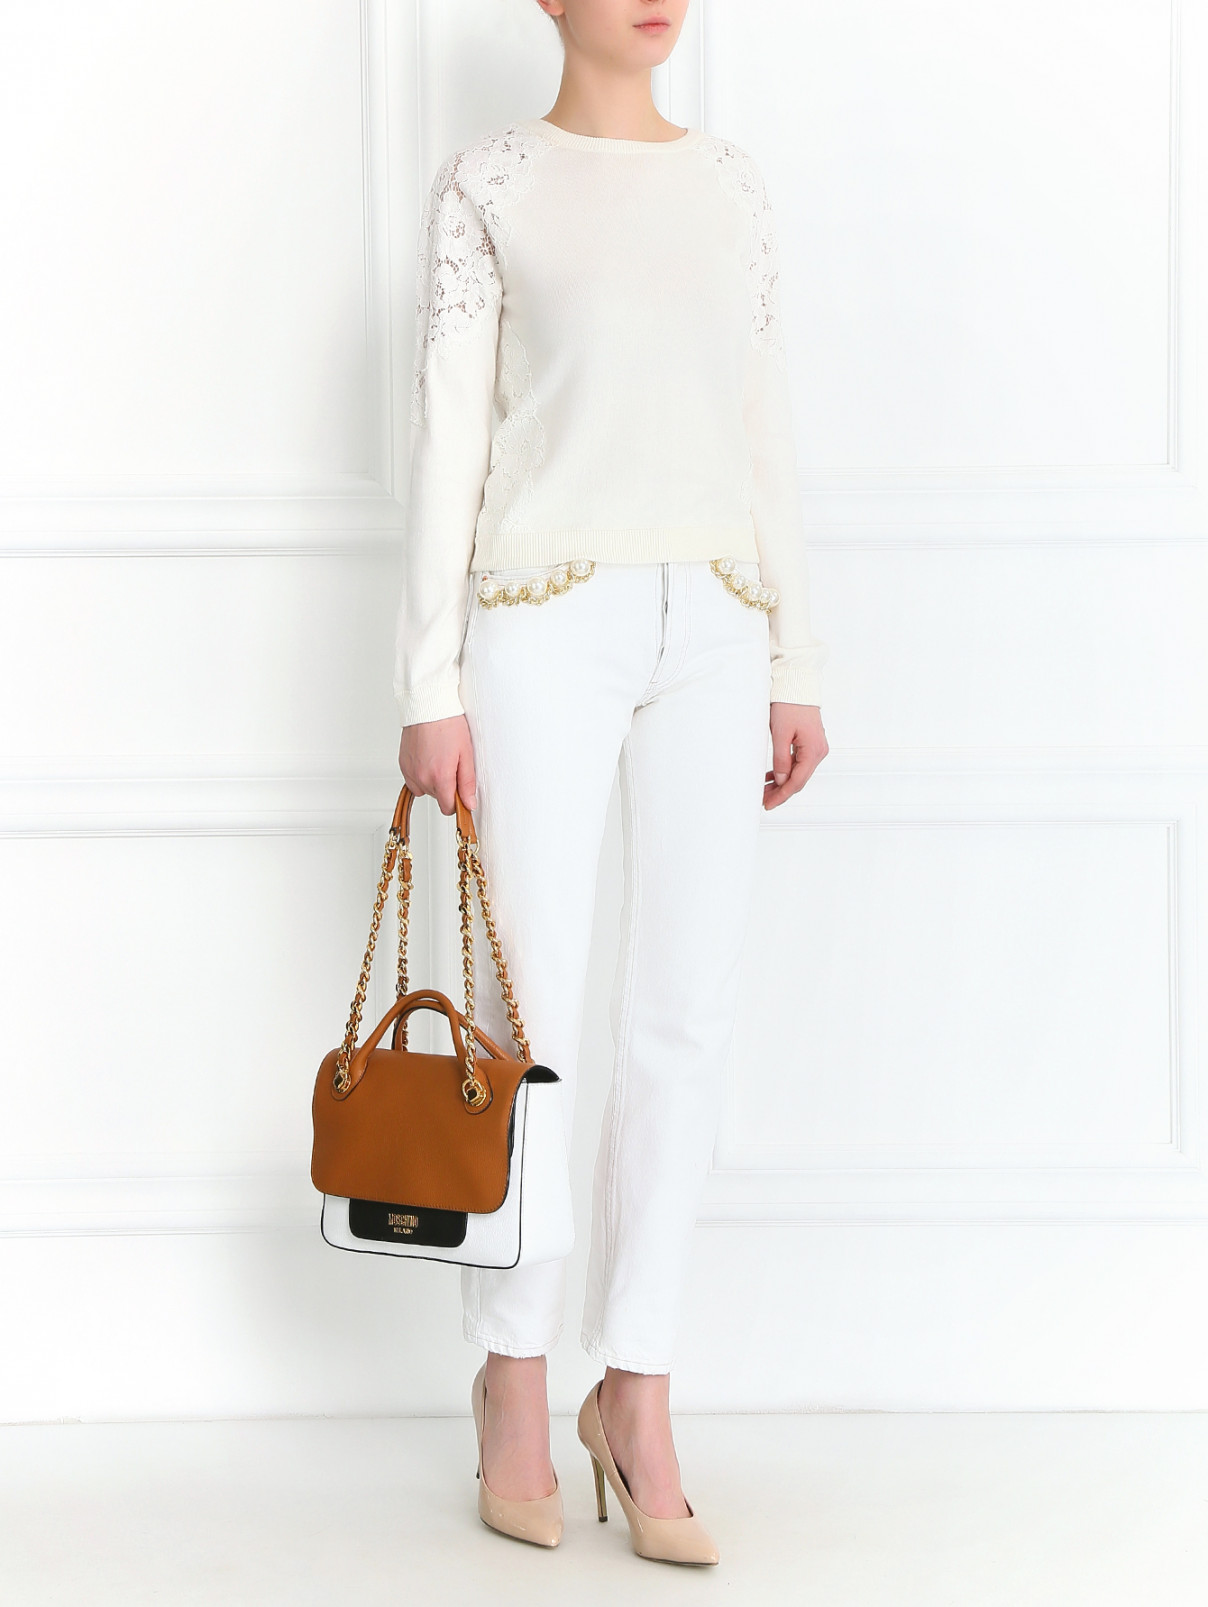 Джинсы-бойфренды декорированные искусственным жемчугом Forte Dei Marmi Couture  –  Модель Общий вид  – Цвет:  Белый